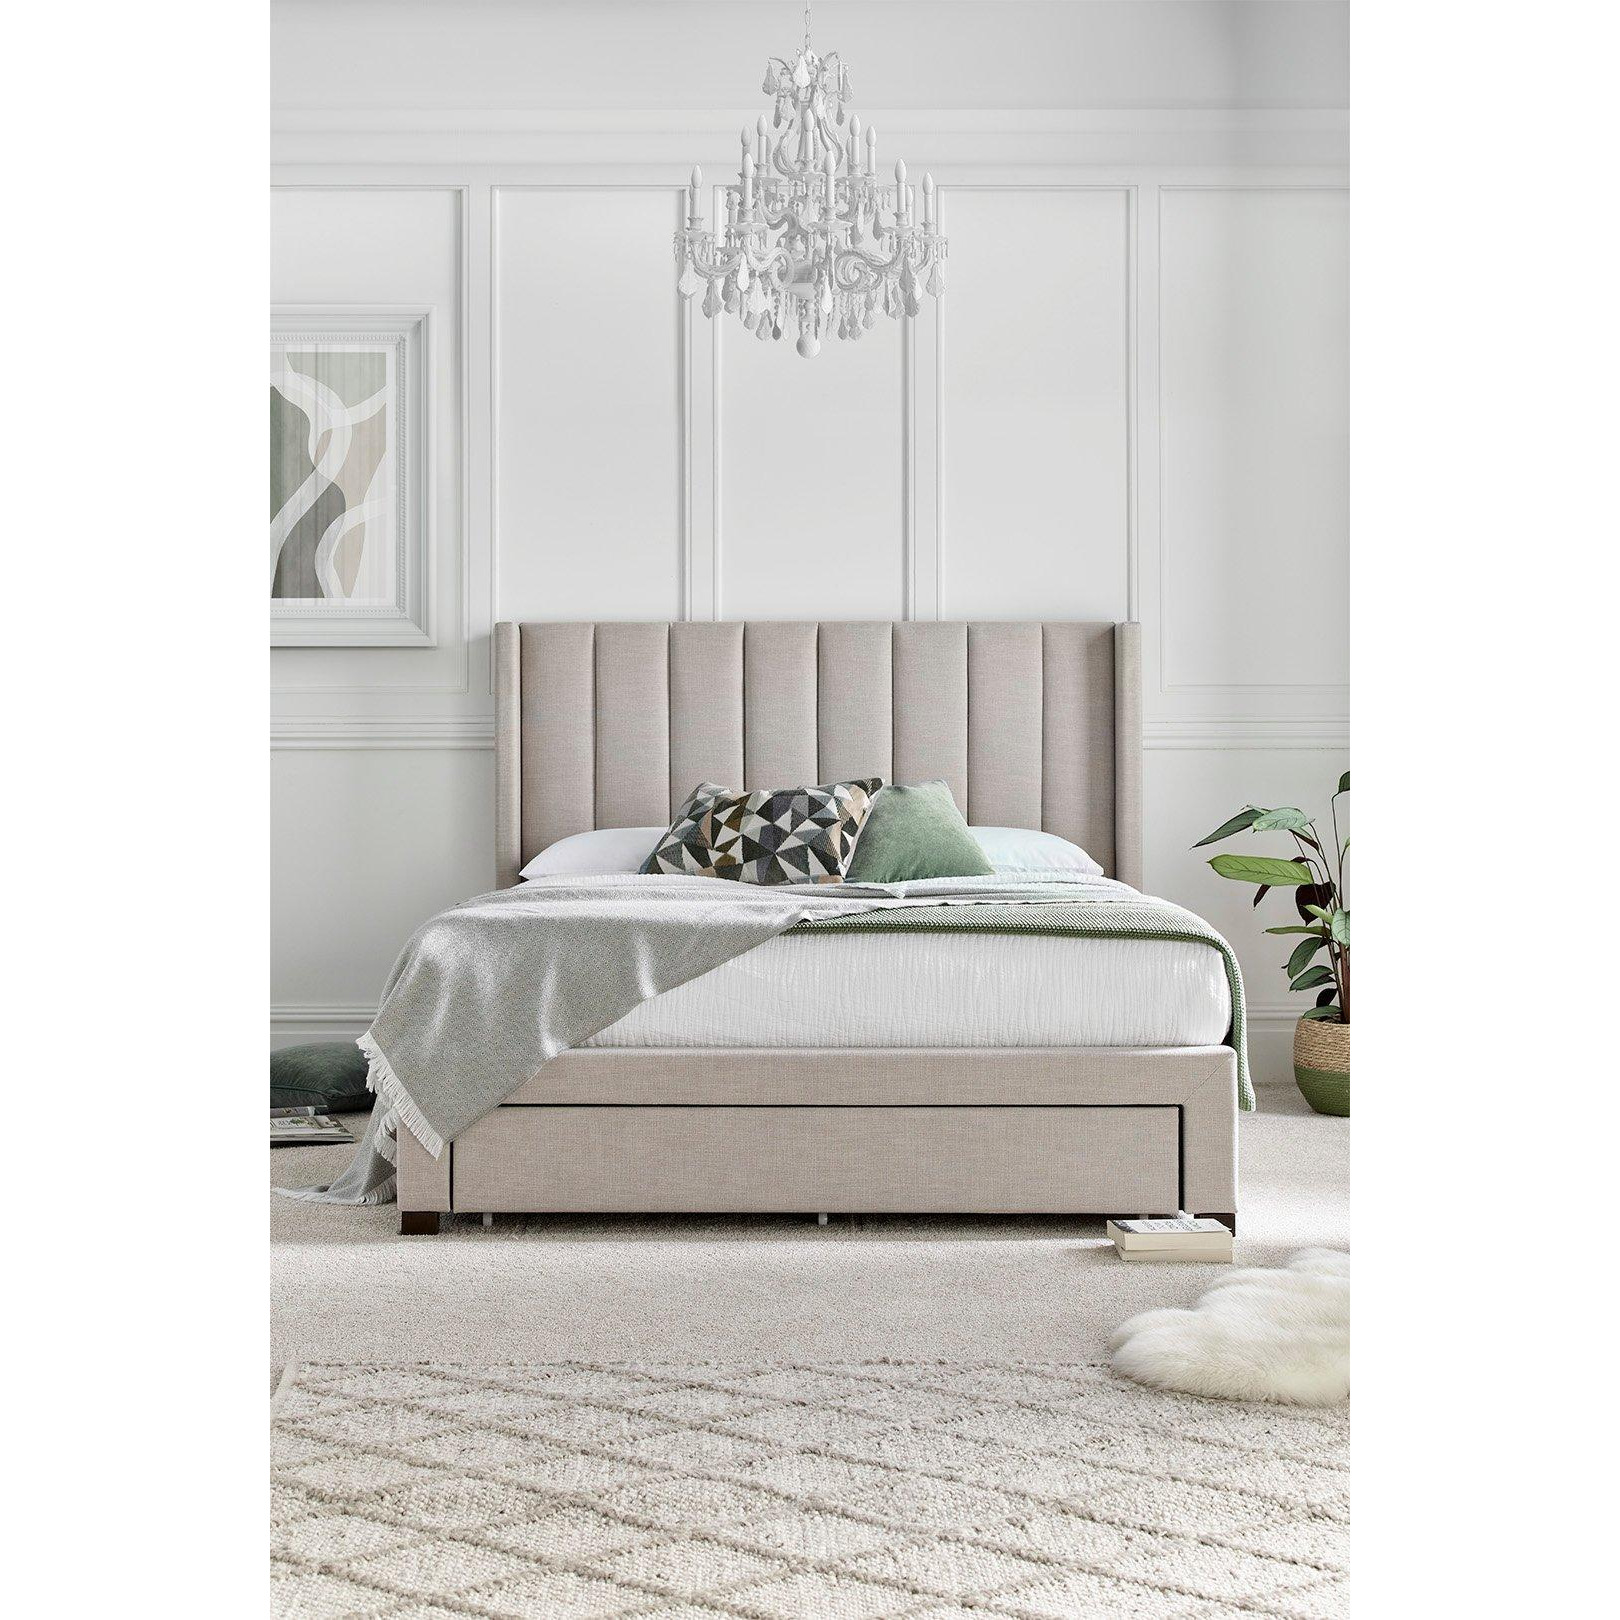 Savannah Natural Oat Upholstered - Bed Frame Only - image 1